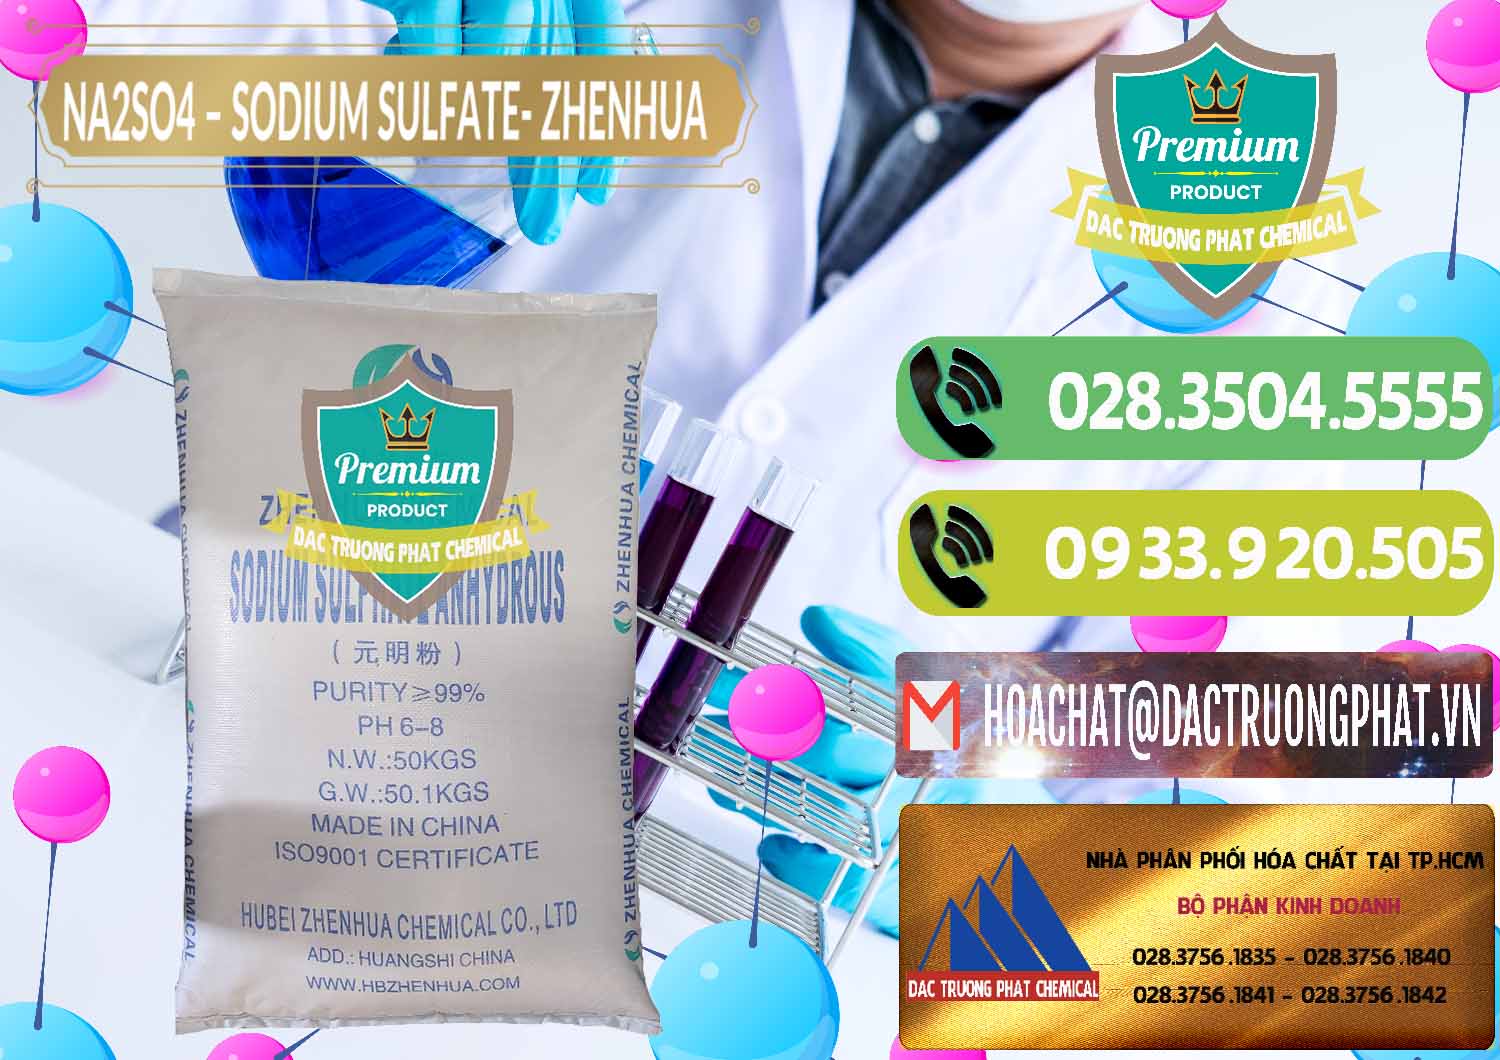 Cty bán & cung cấp Sodium Sulphate - Muối Sunfat Na2SO4 Zhenhua Trung Quốc China - 0101 - Công ty chuyên cung ứng & phân phối hóa chất tại TP.HCM - hoachatmientay.vn